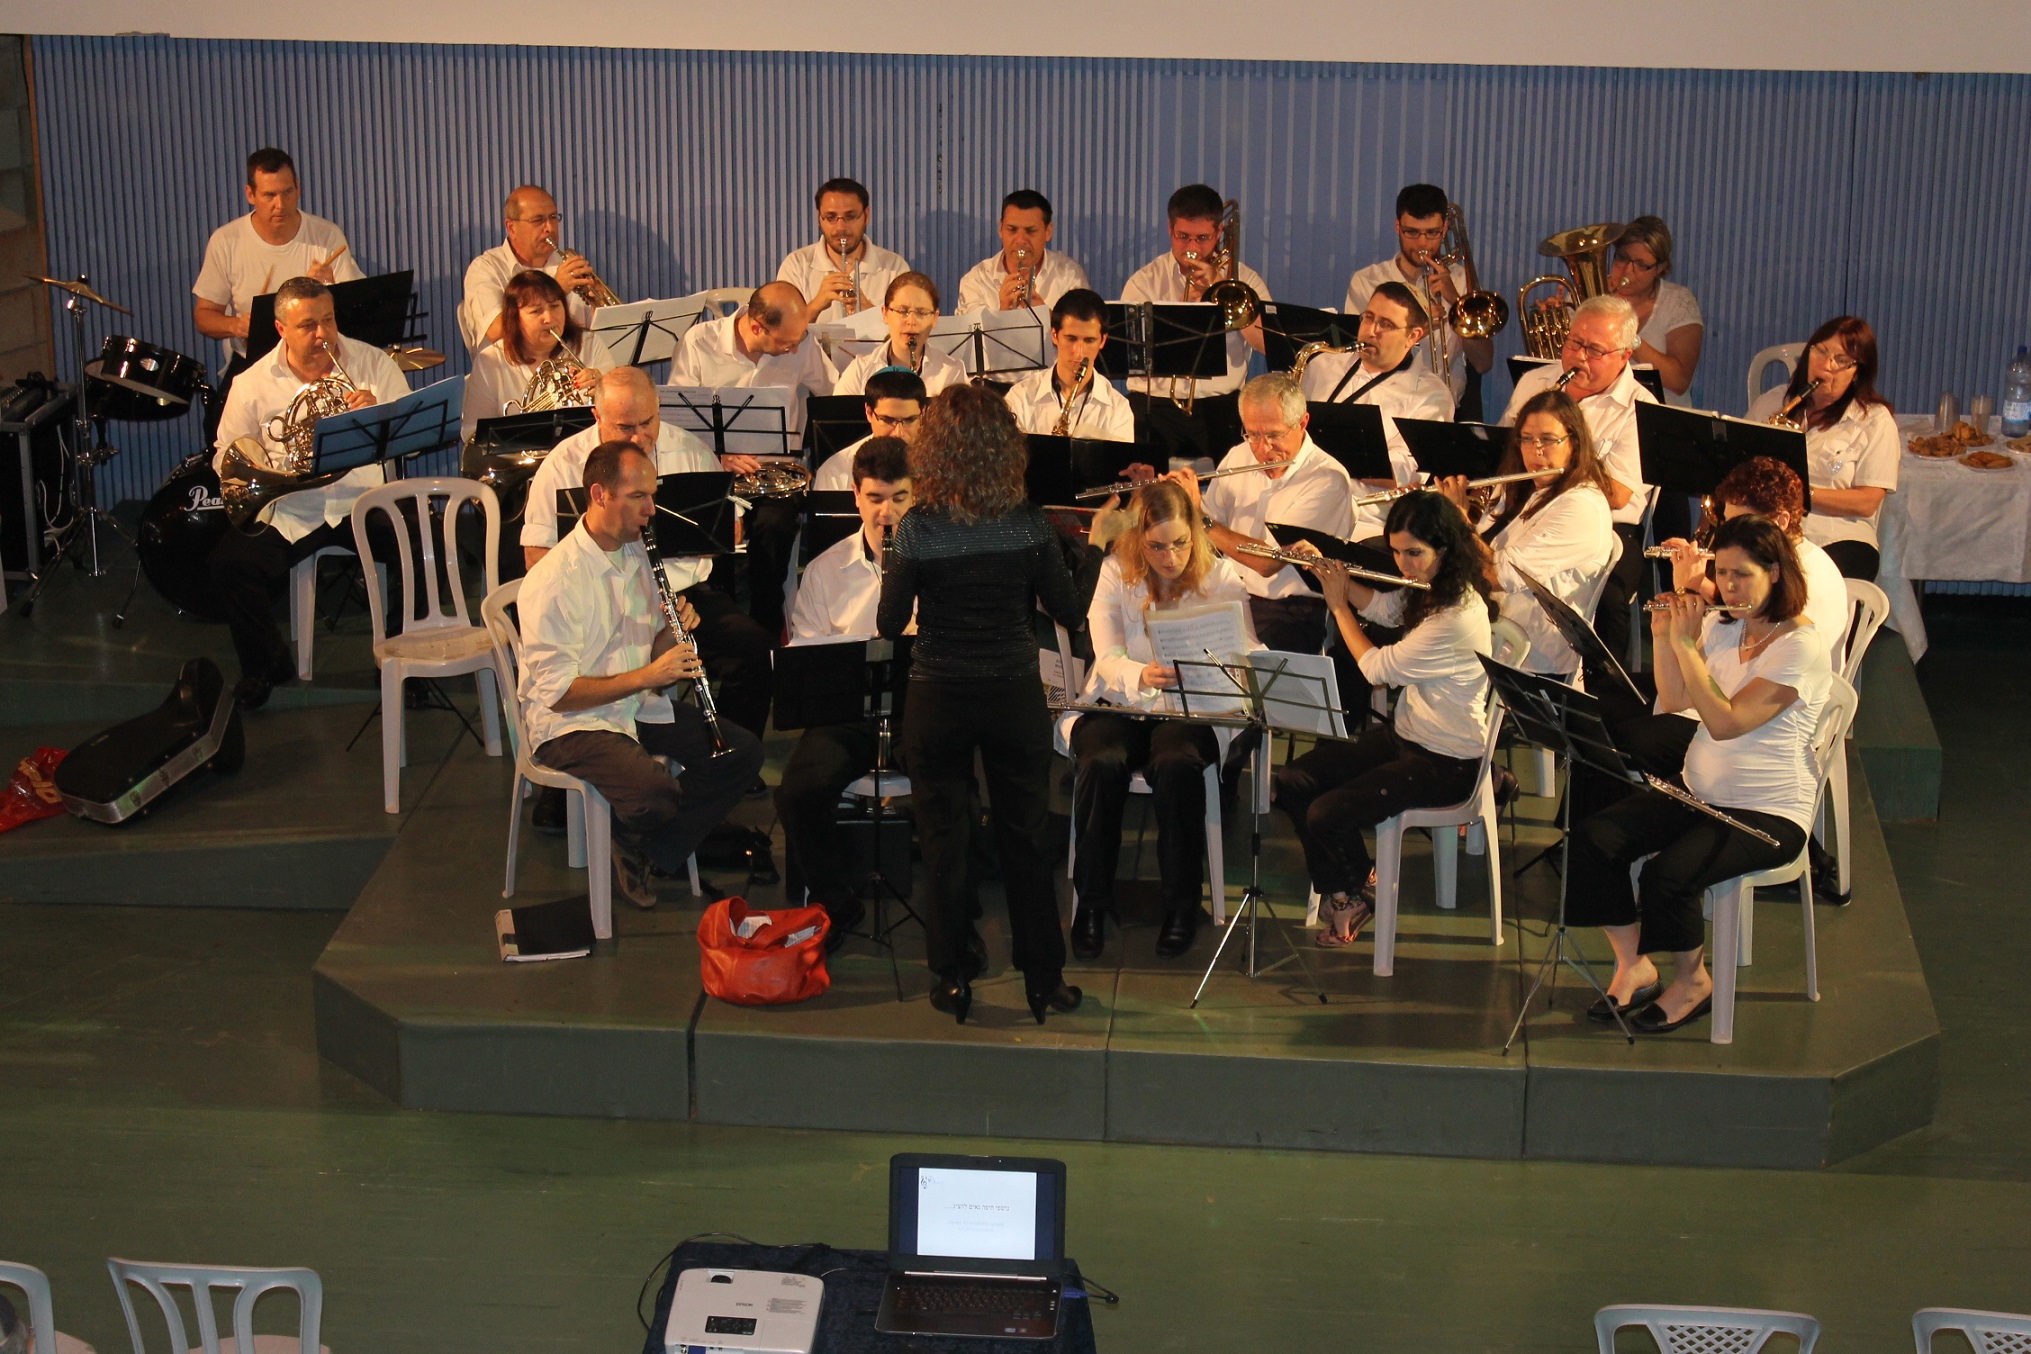 תזמורת נשפני חיפה צילם גריגורי יונגלסון (הגדל)